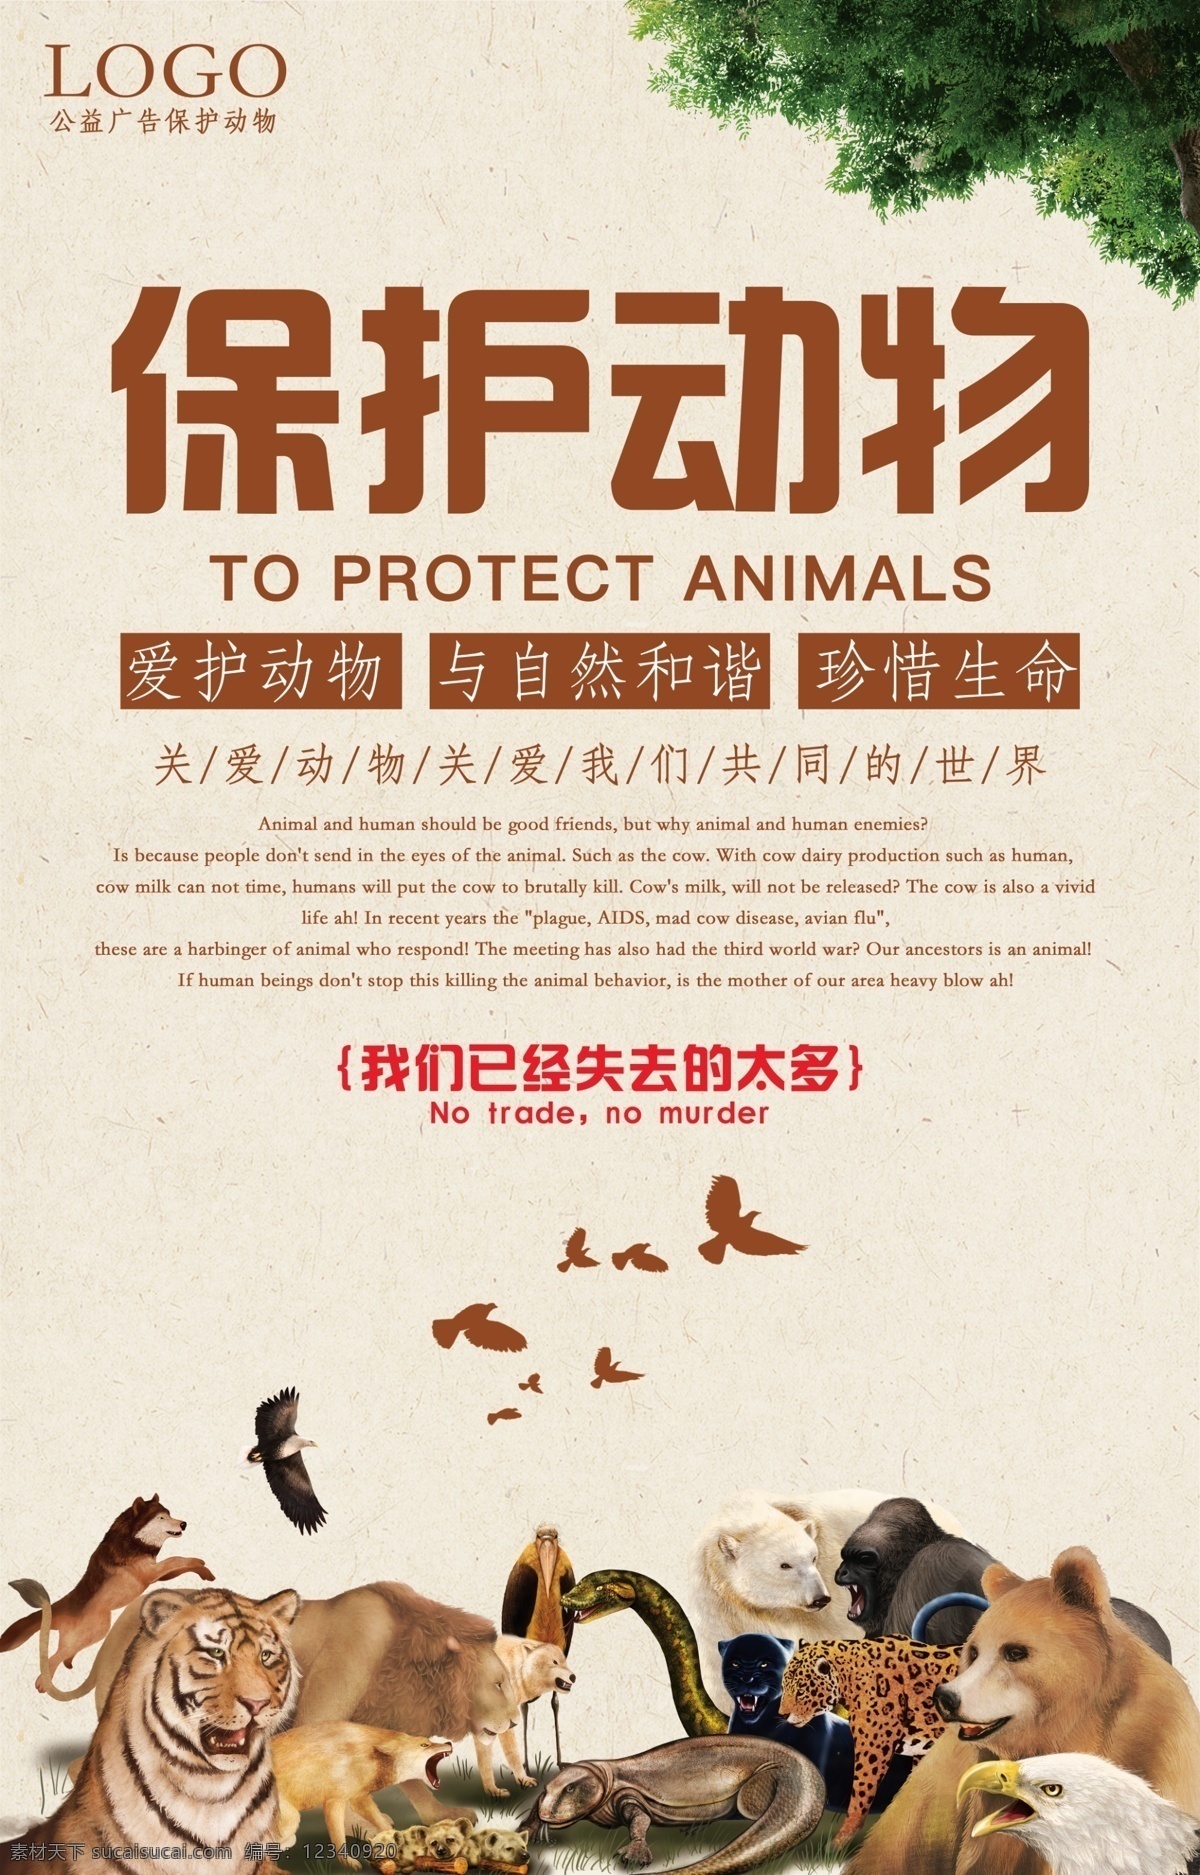 保护 野生动物 公益 海报 公益海报 公益宣传单 地铁宣传单 桥厢广告 单页 折页 爱护动物 与自然和谐 珍爱动物 动物园 野生动物园